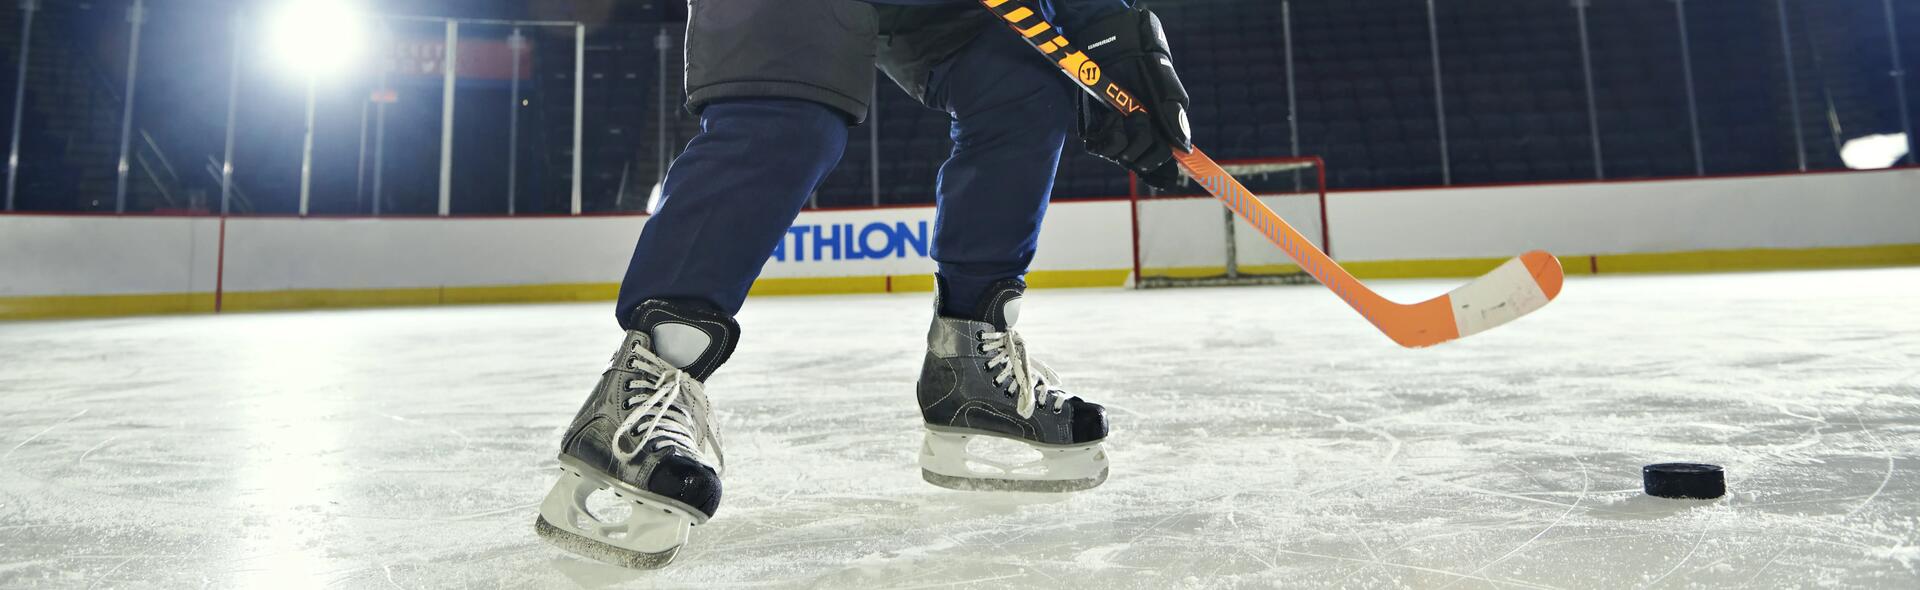 osoba w stroju do gry w hokeja stojąca na lodowisku trzymając kij hokejowy